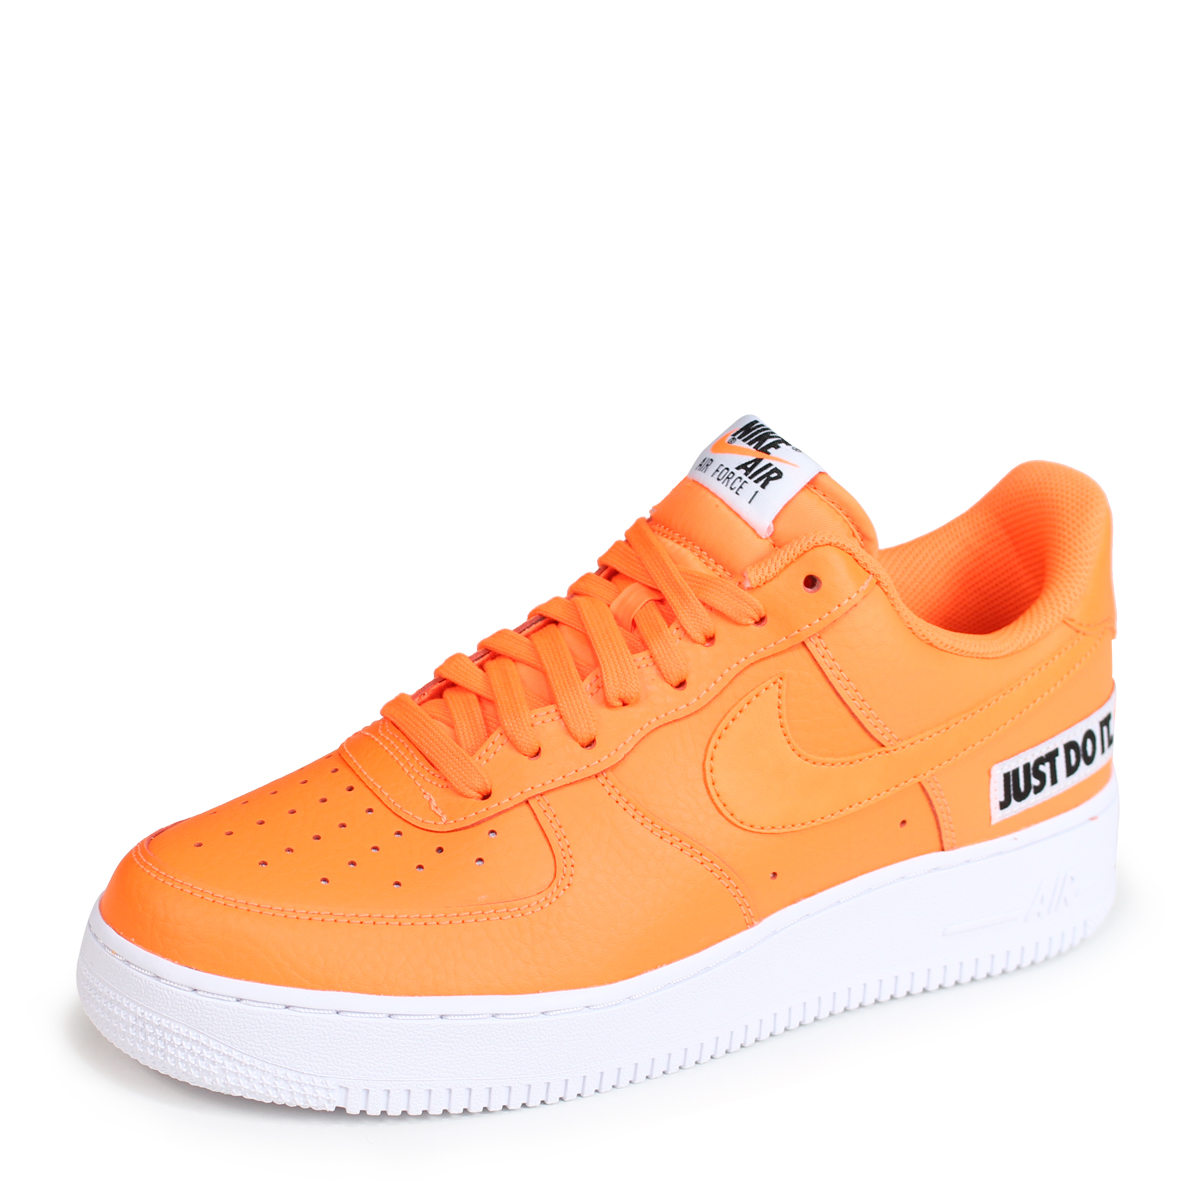 orange just do it nike shoes